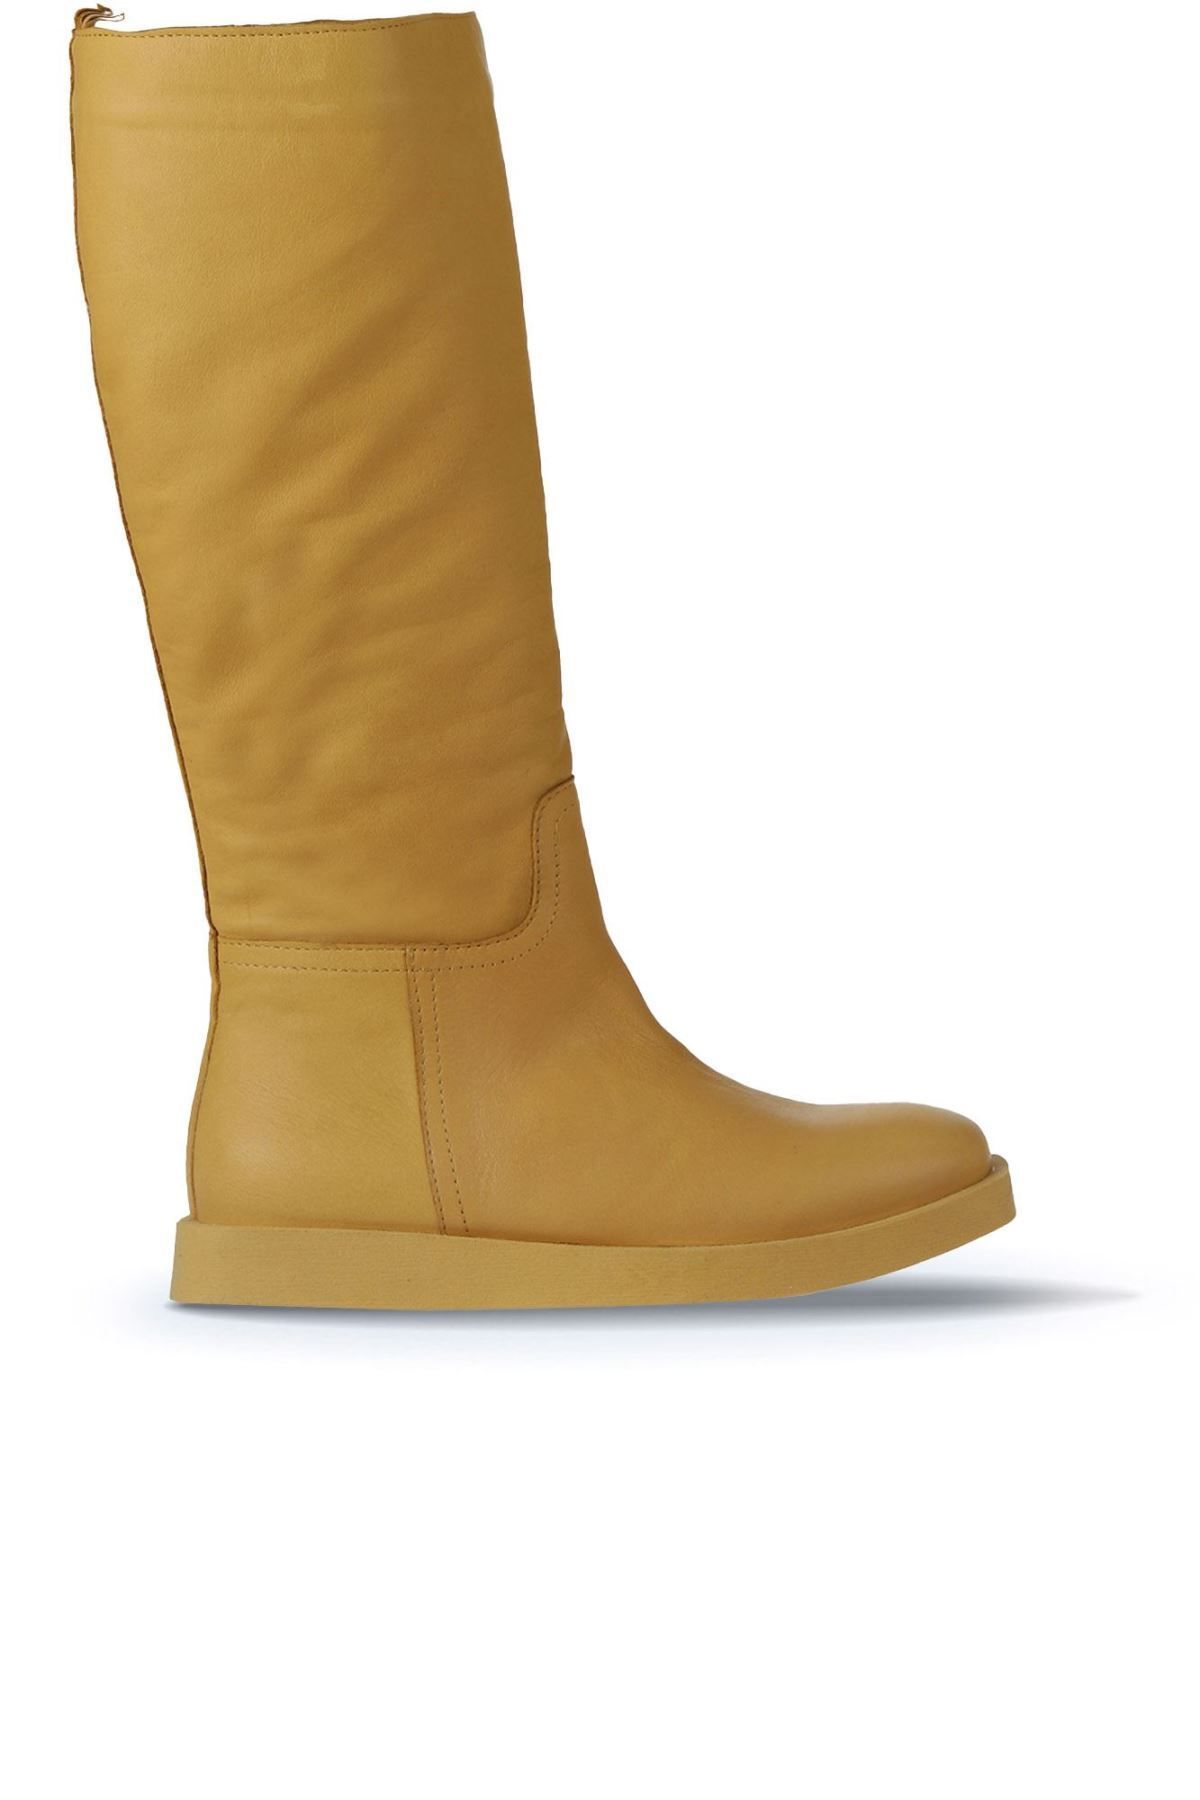 Bueno Shoes Sarı Deri Kadın Düz Çizme